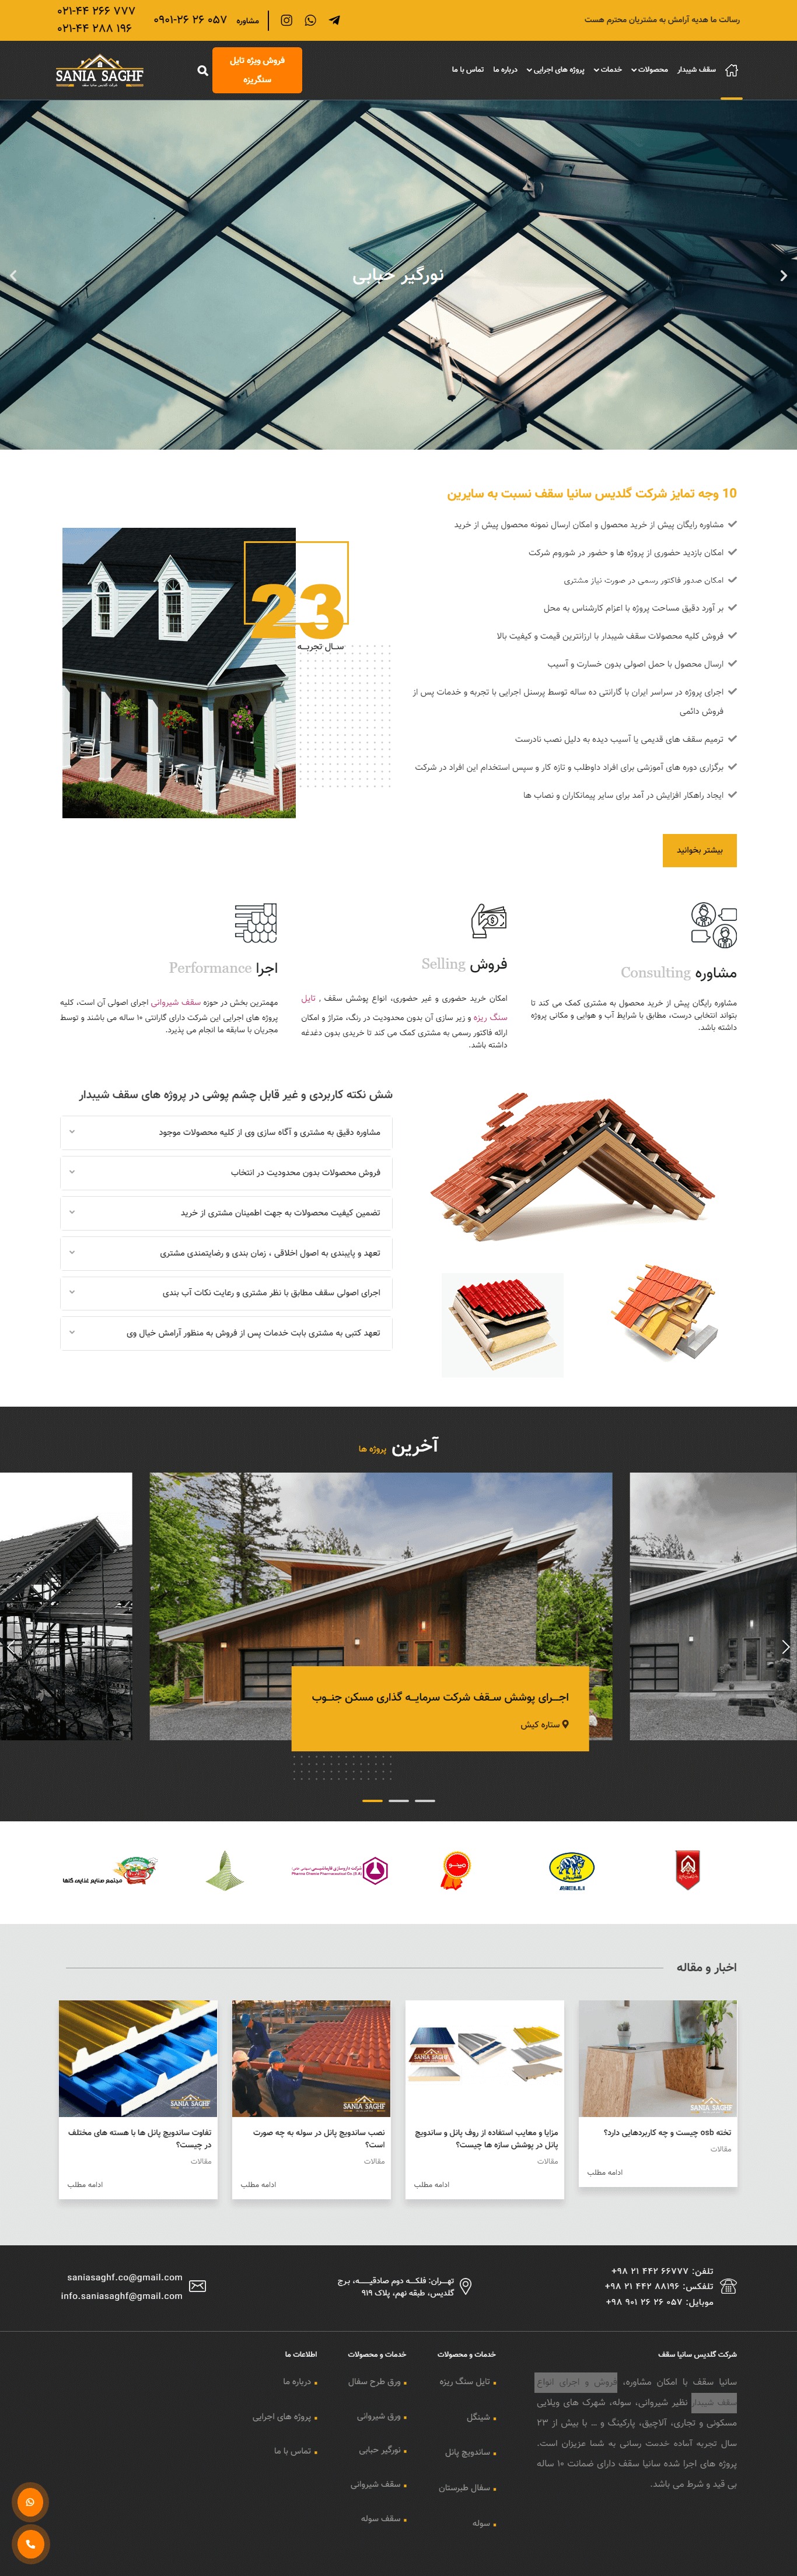 طراحی سایت گلدیس سانیا سقف